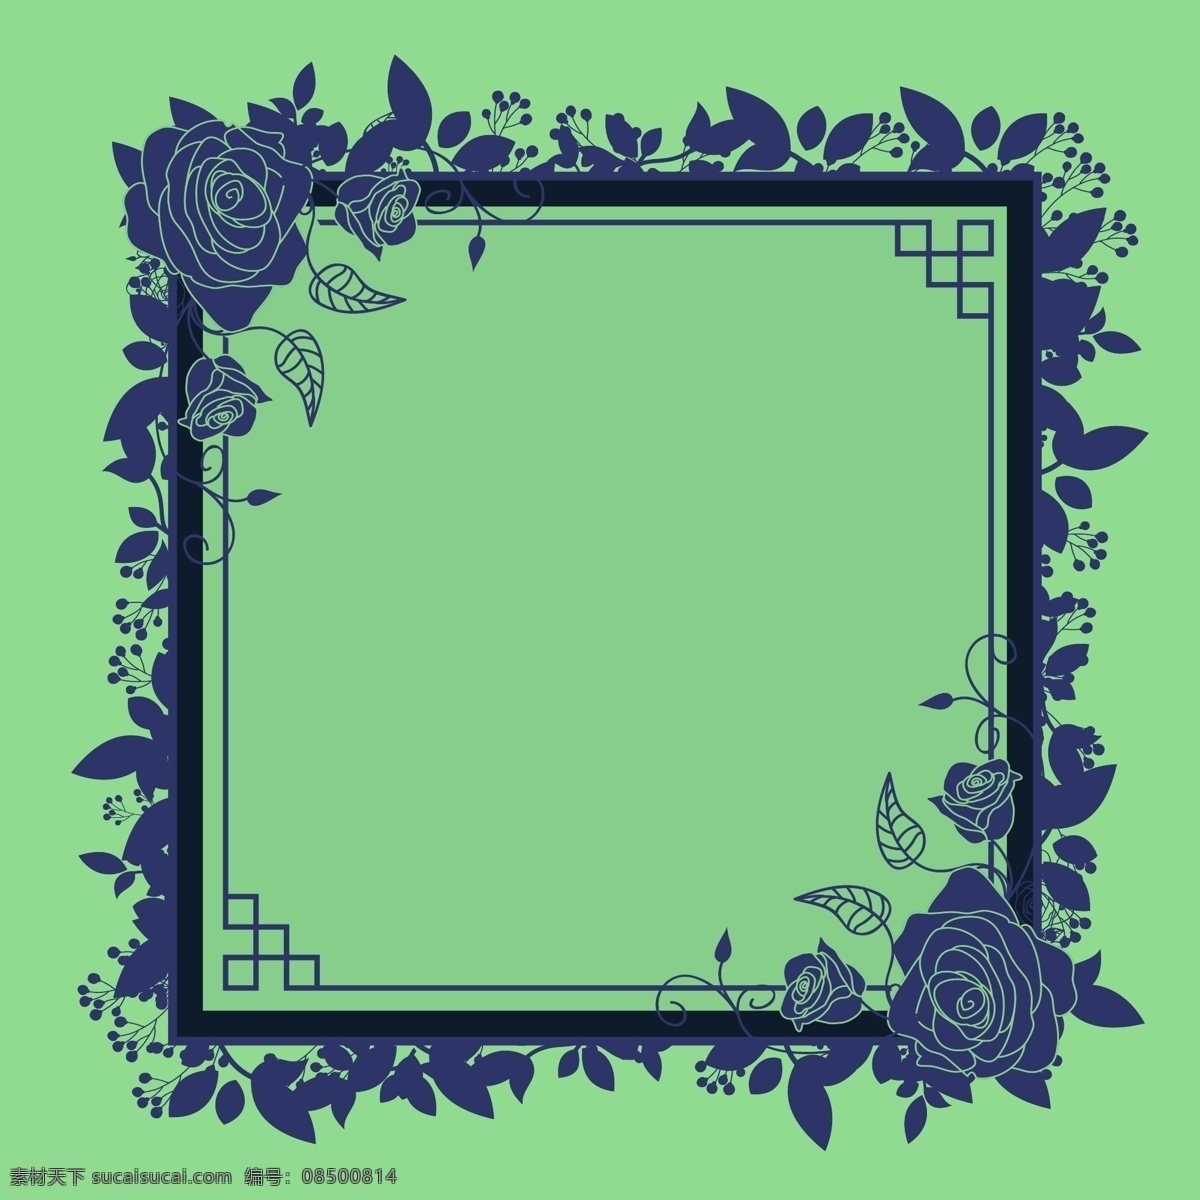 玫瑰花 边框 玫瑰花边框 手绘玫瑰花 边框素材 手绘花卉 花卉花朵 矢量素材